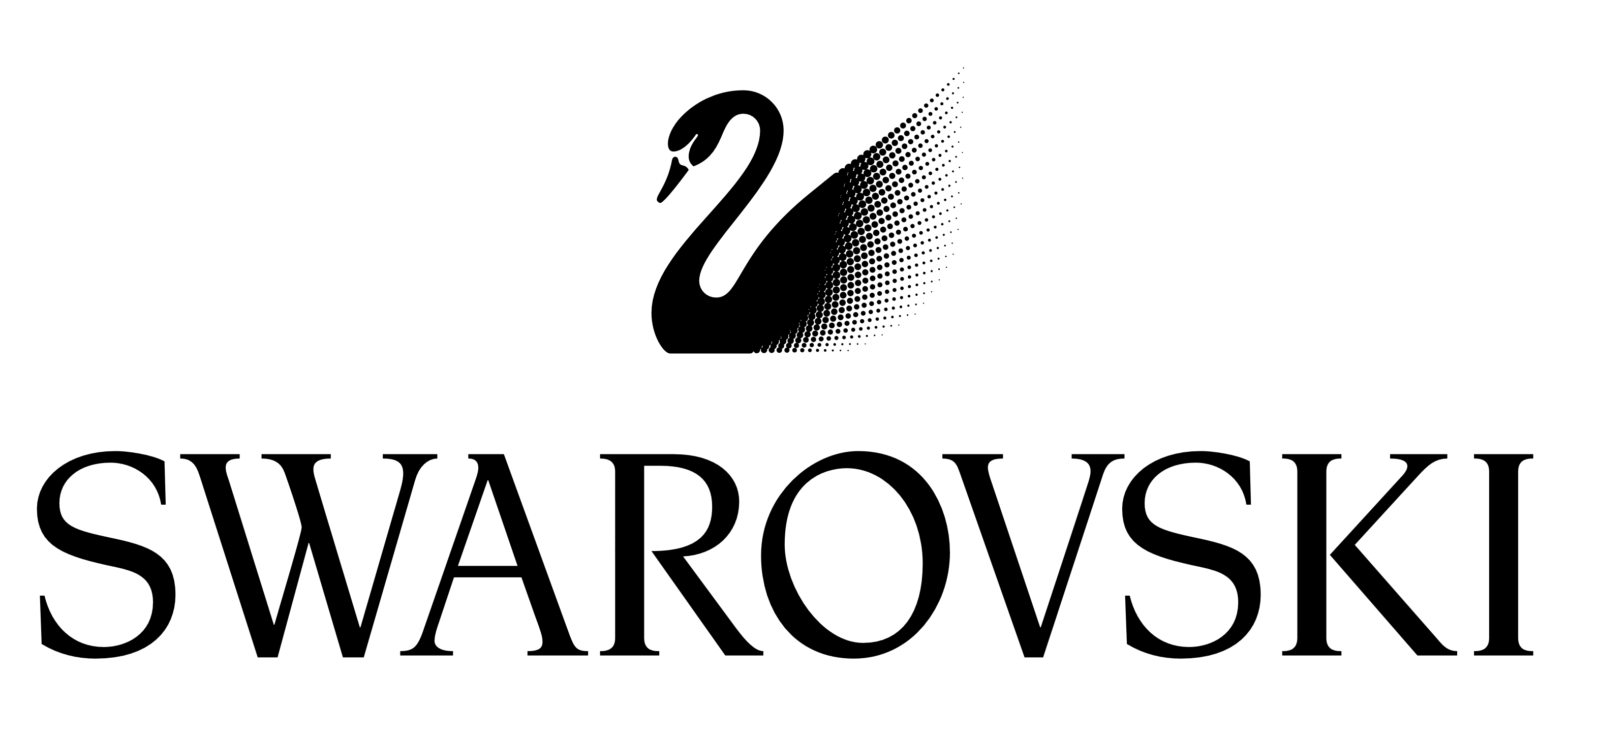 Своровский. Сваровски эмблема. Сваровски бренд. Swarovski бренд логотип. Сваровски надпись.